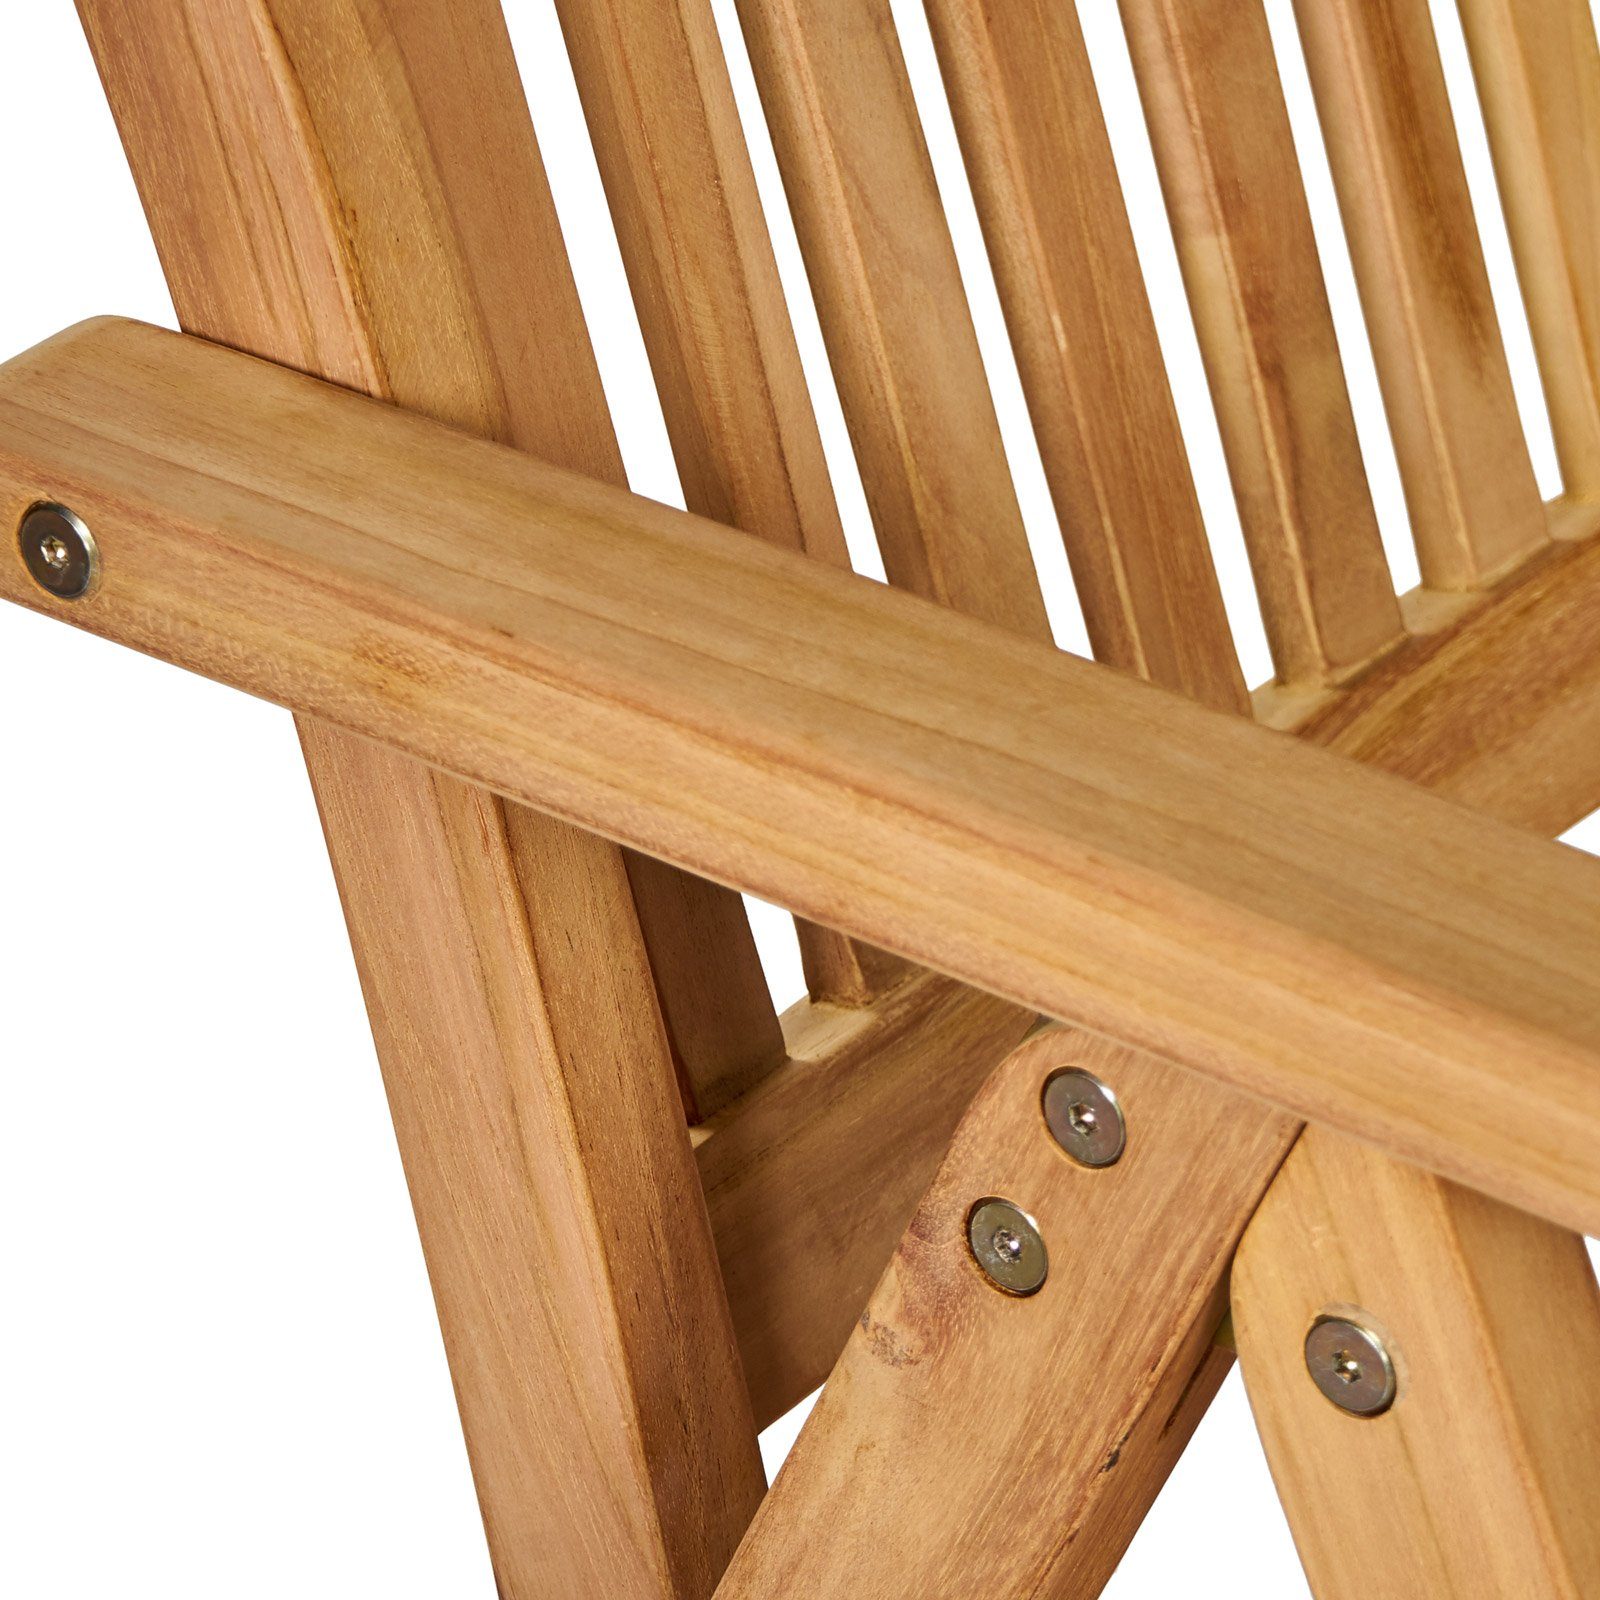 Garland Sitzgruppe Bari, (5-tlg), Teak 150-200cm Klappbar Ausziehbar Wetterfest Holz Stühle Tisch